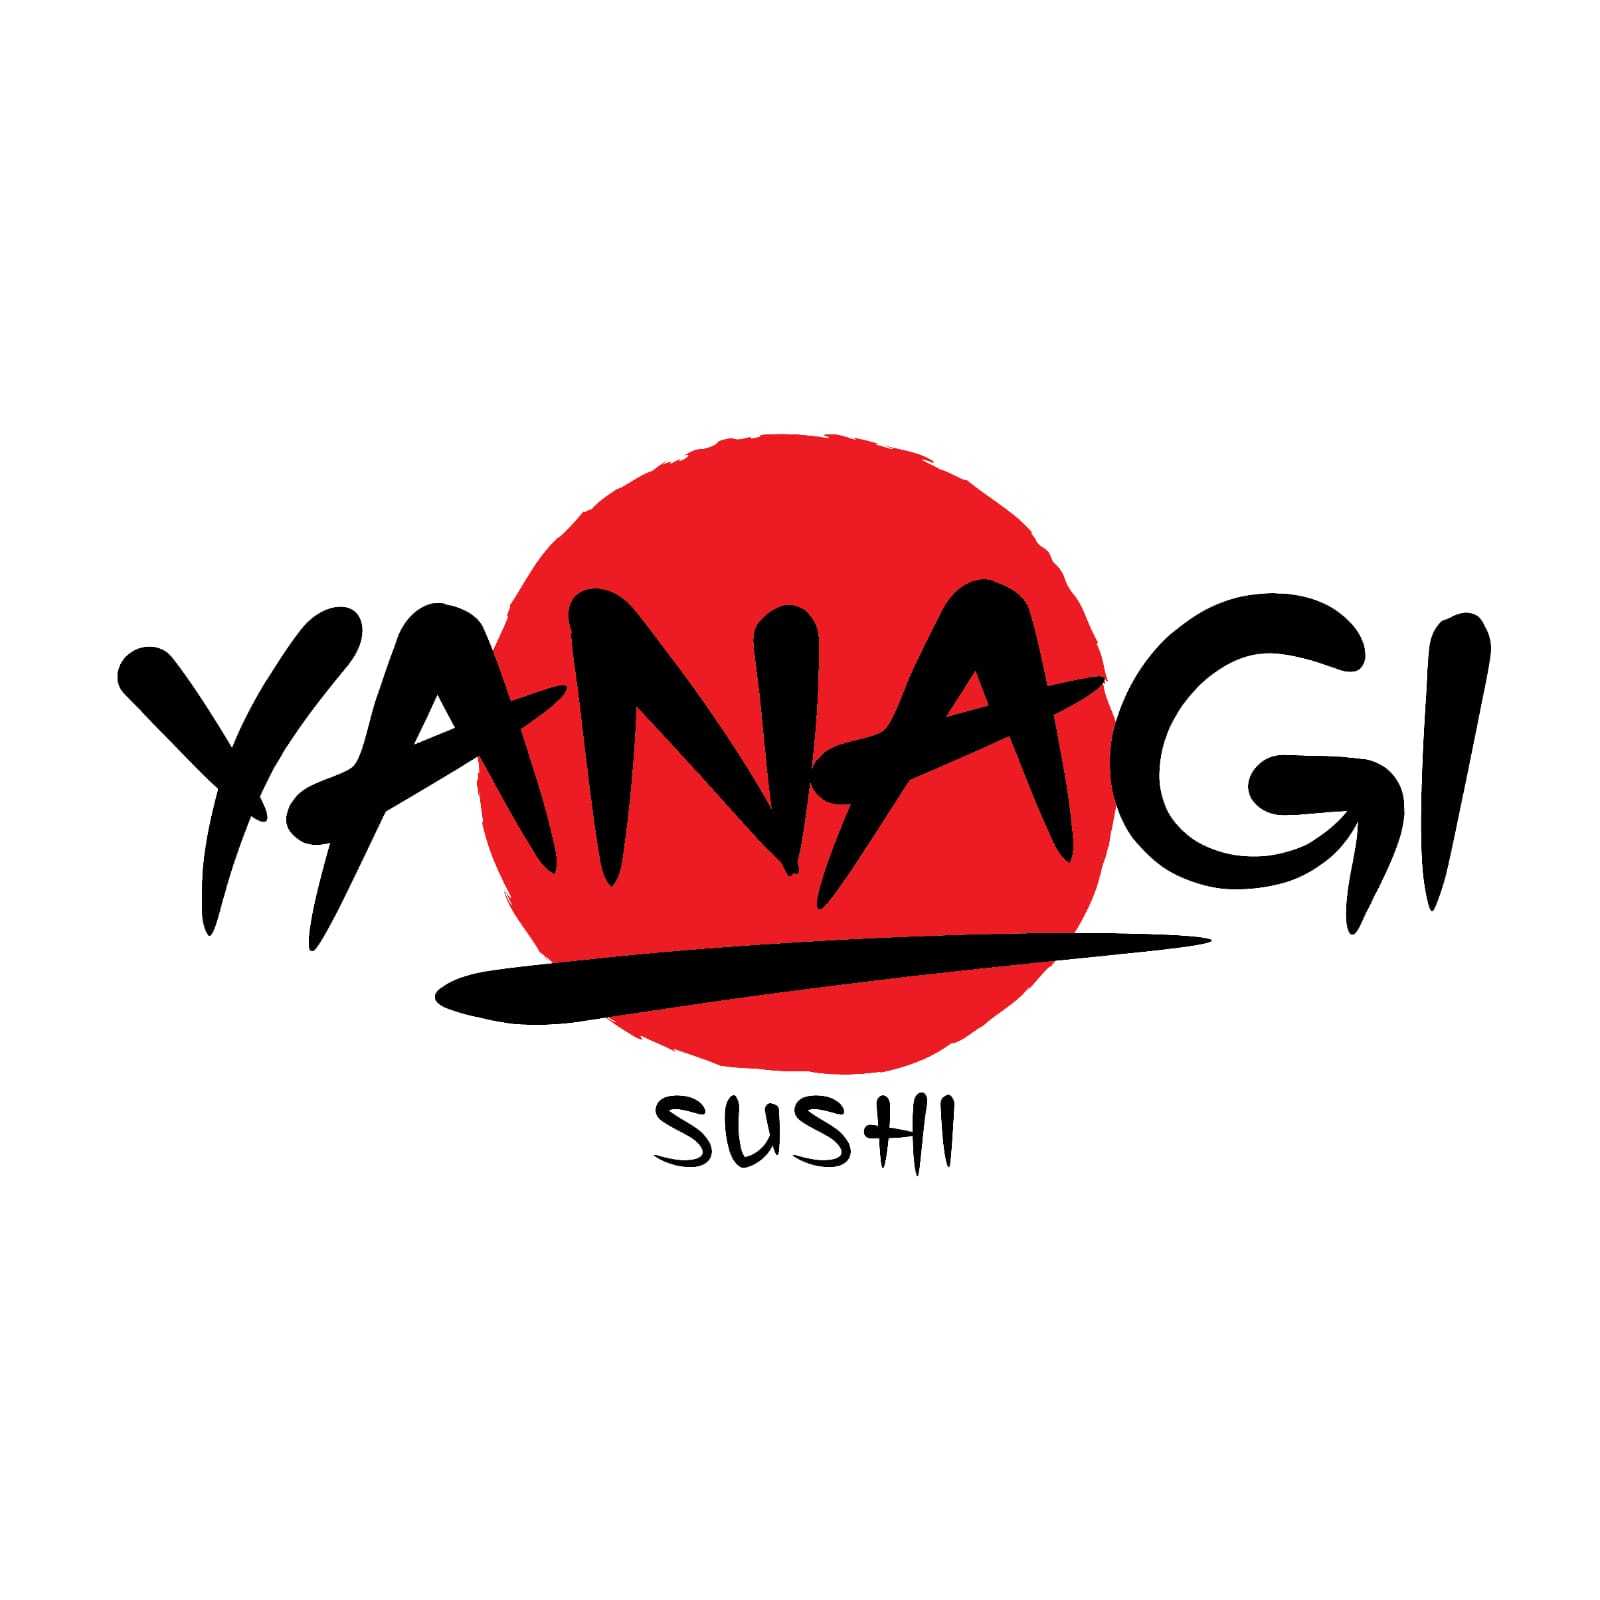 Yanagi sushi id